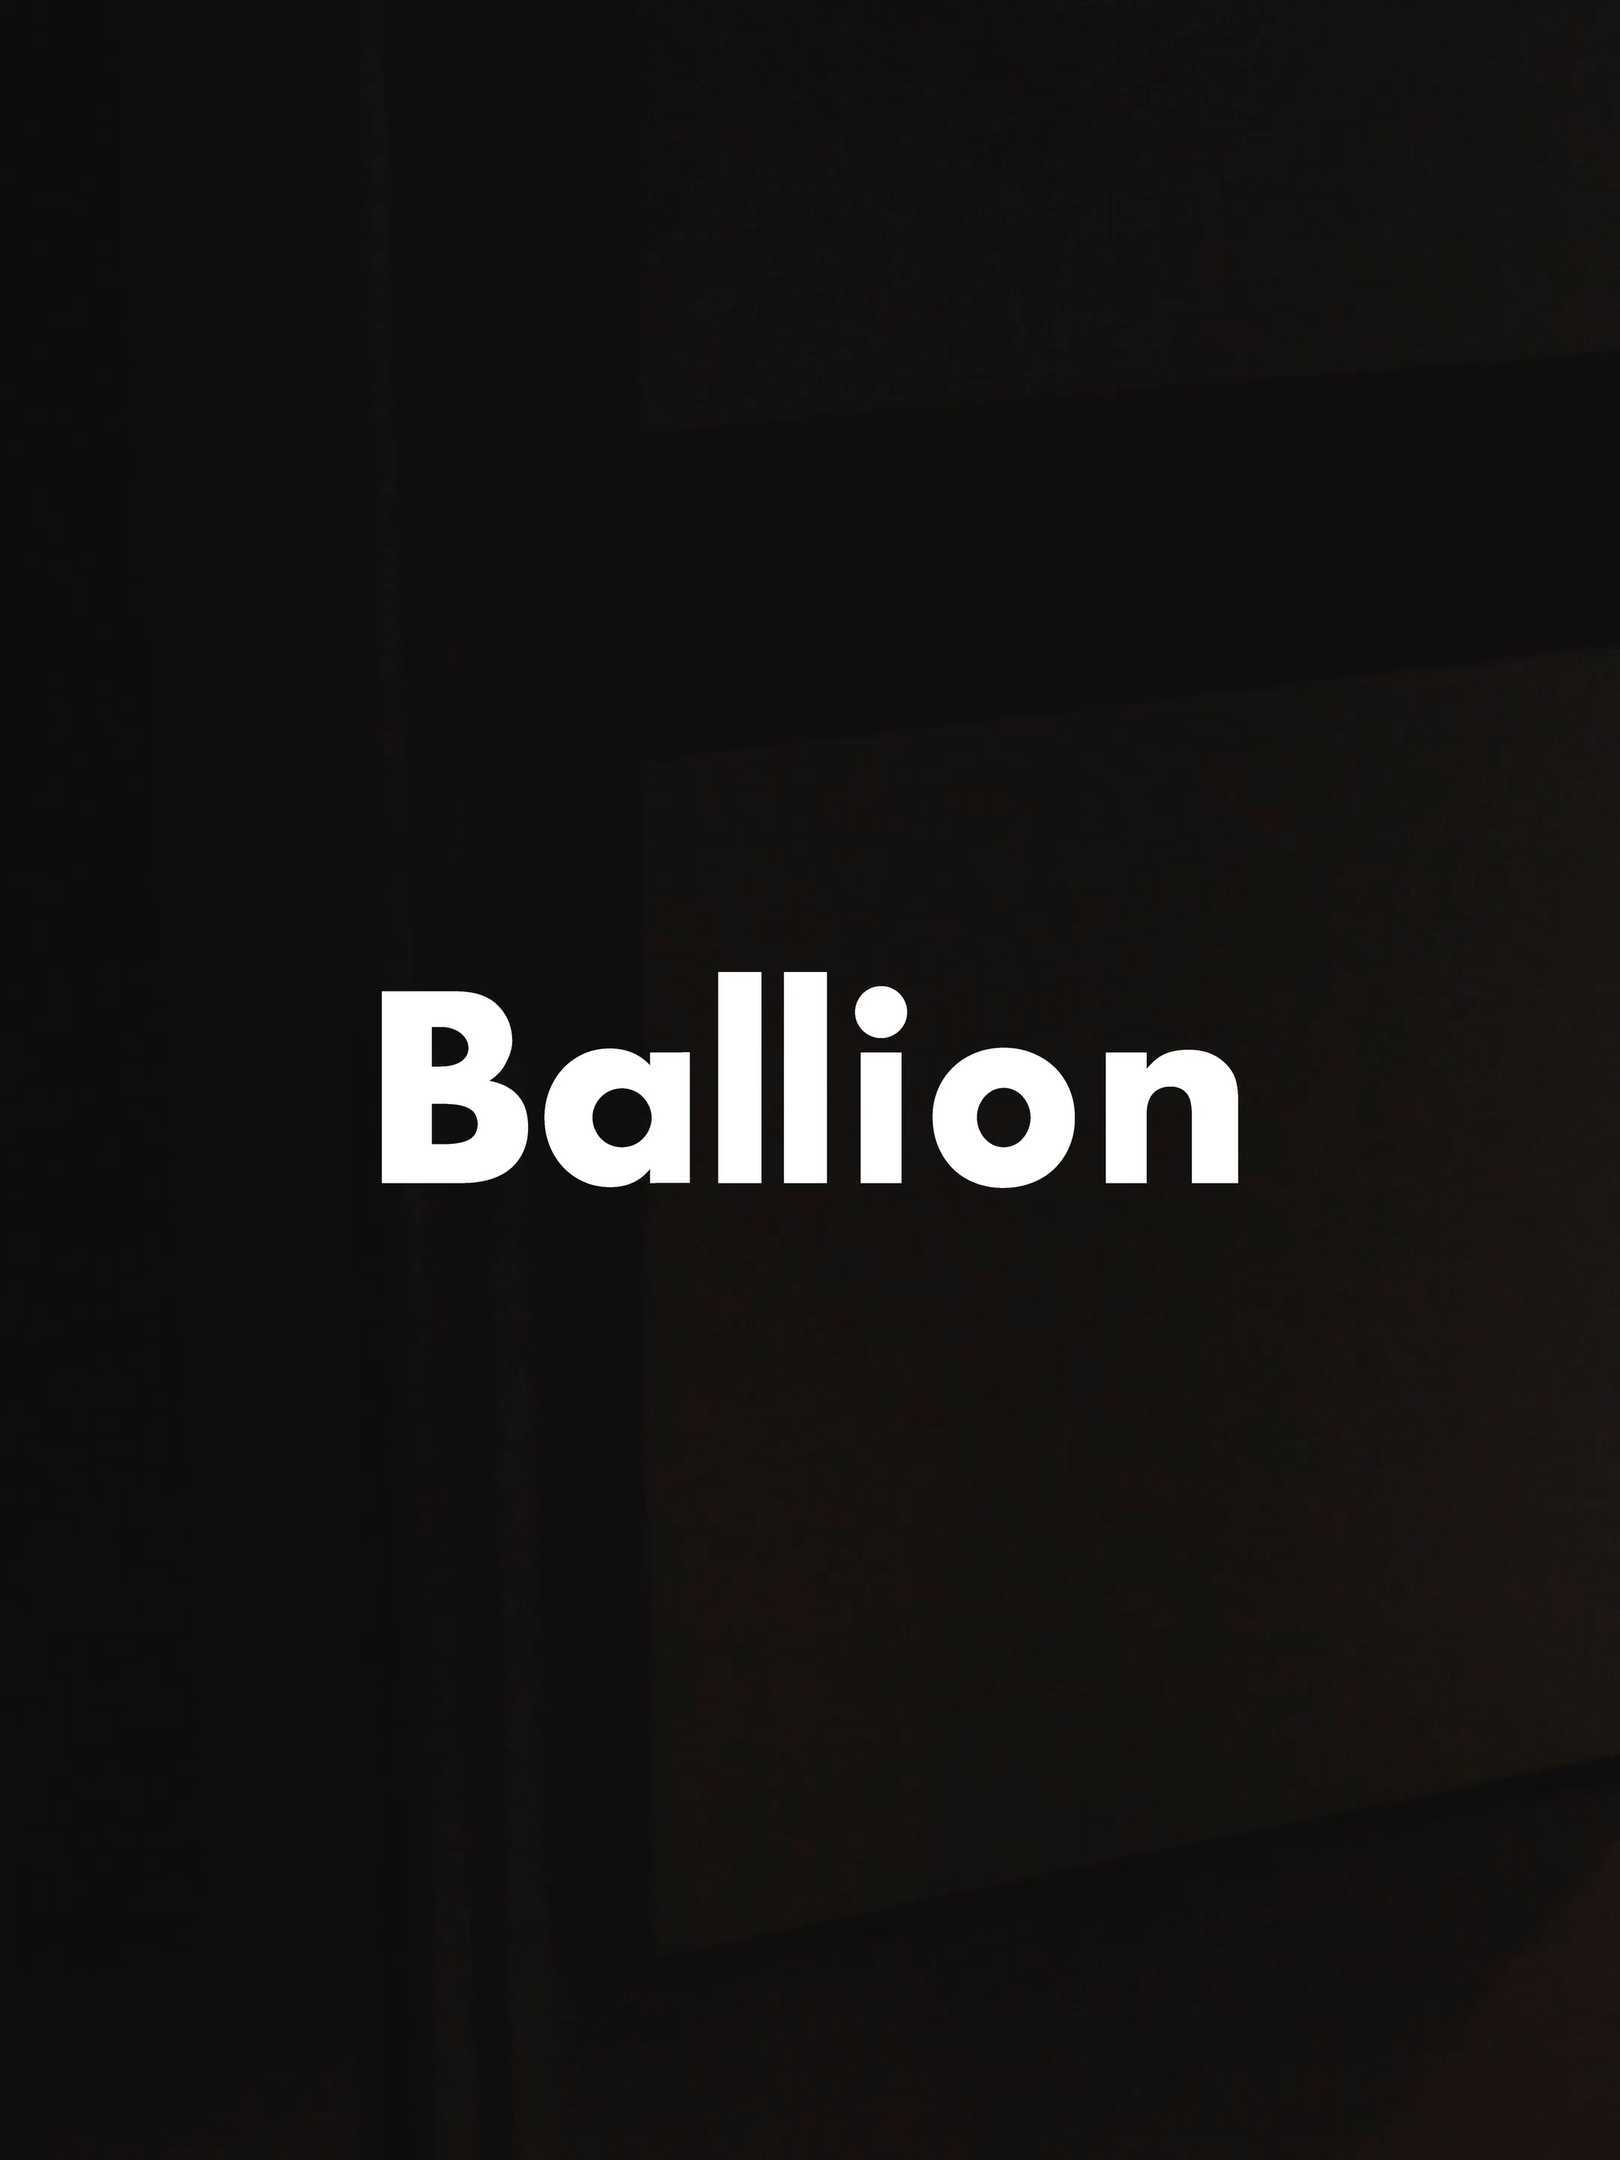 小煜摄影｜空间拍摄案例No.5｜服务品牌Ballion贝尔莱恩｜家居装饰全屋定制